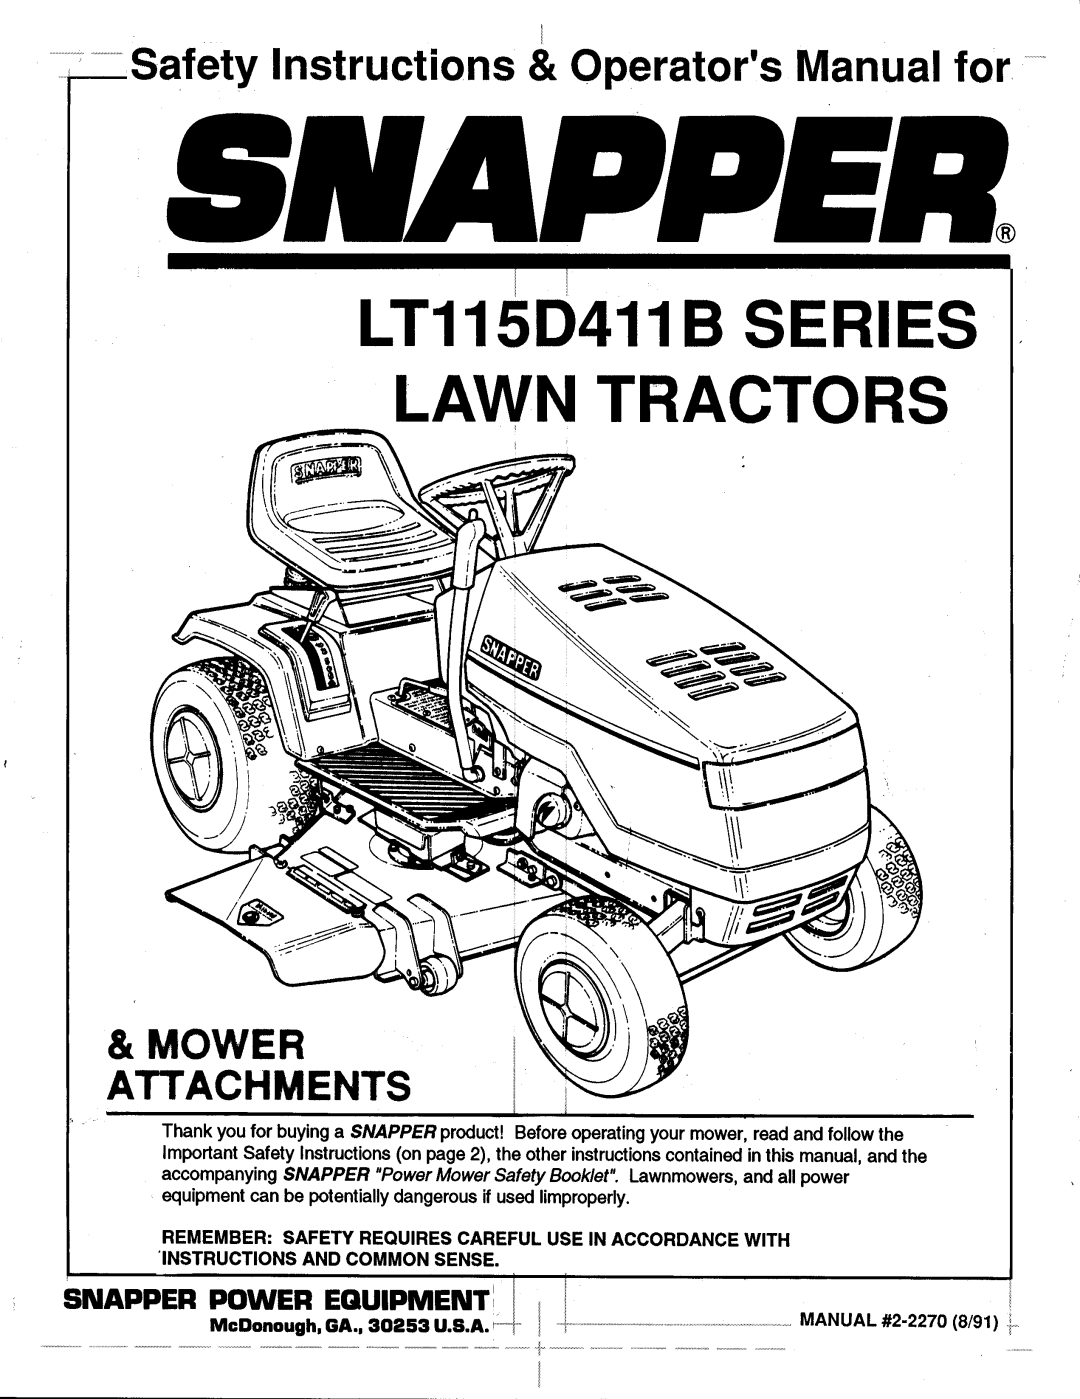 Snapper LT115D114B manual 